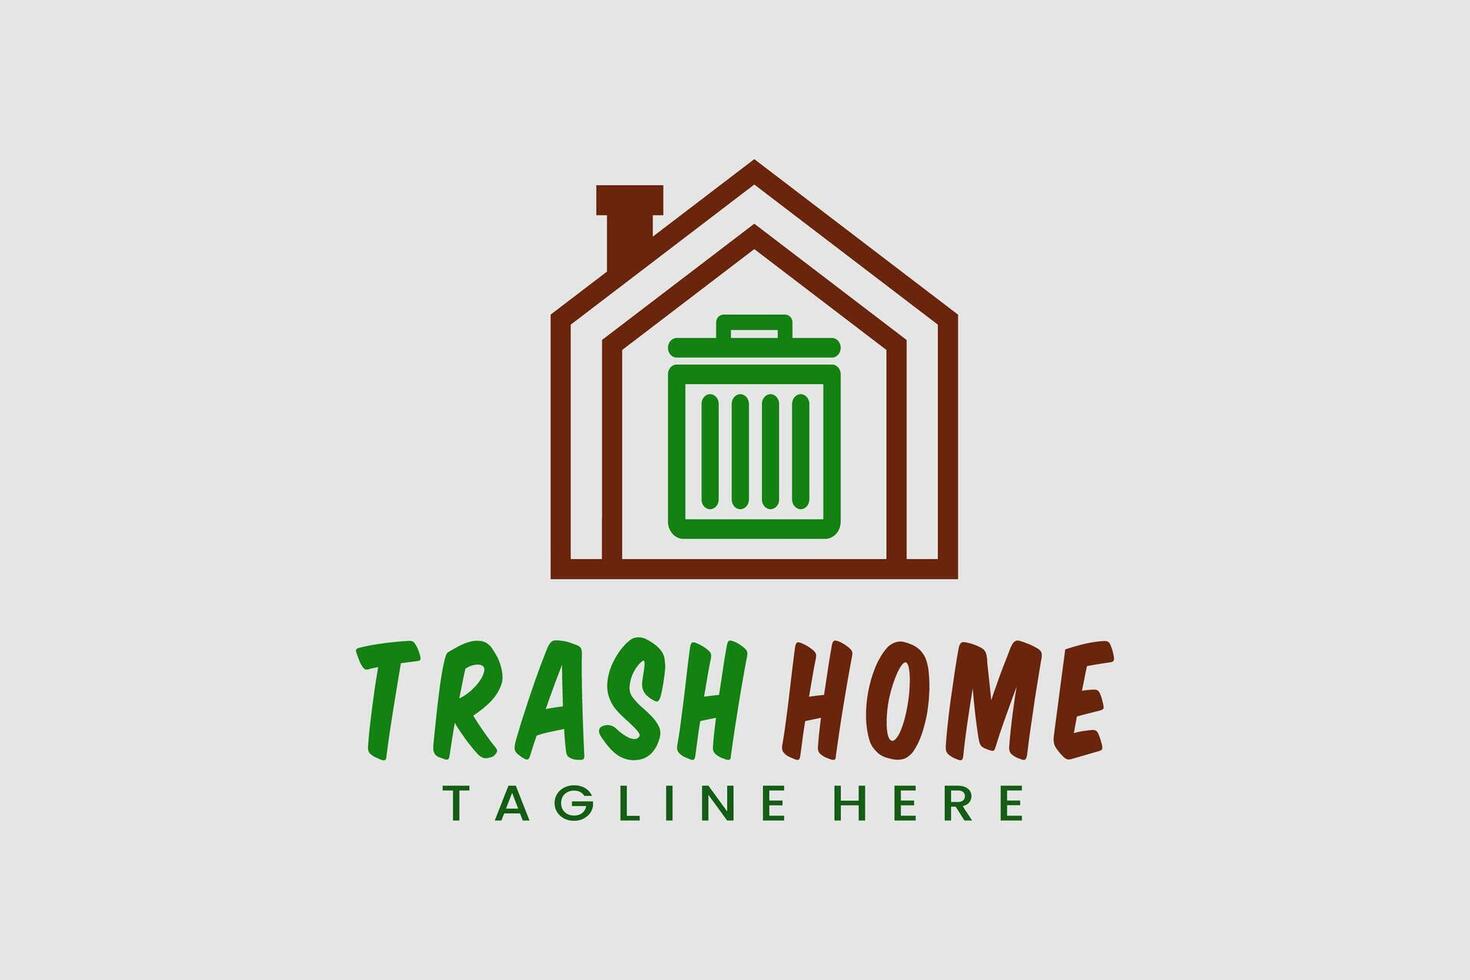 abstract logo house trash rubbish bin logo template, home with rubbish bin logo template vector